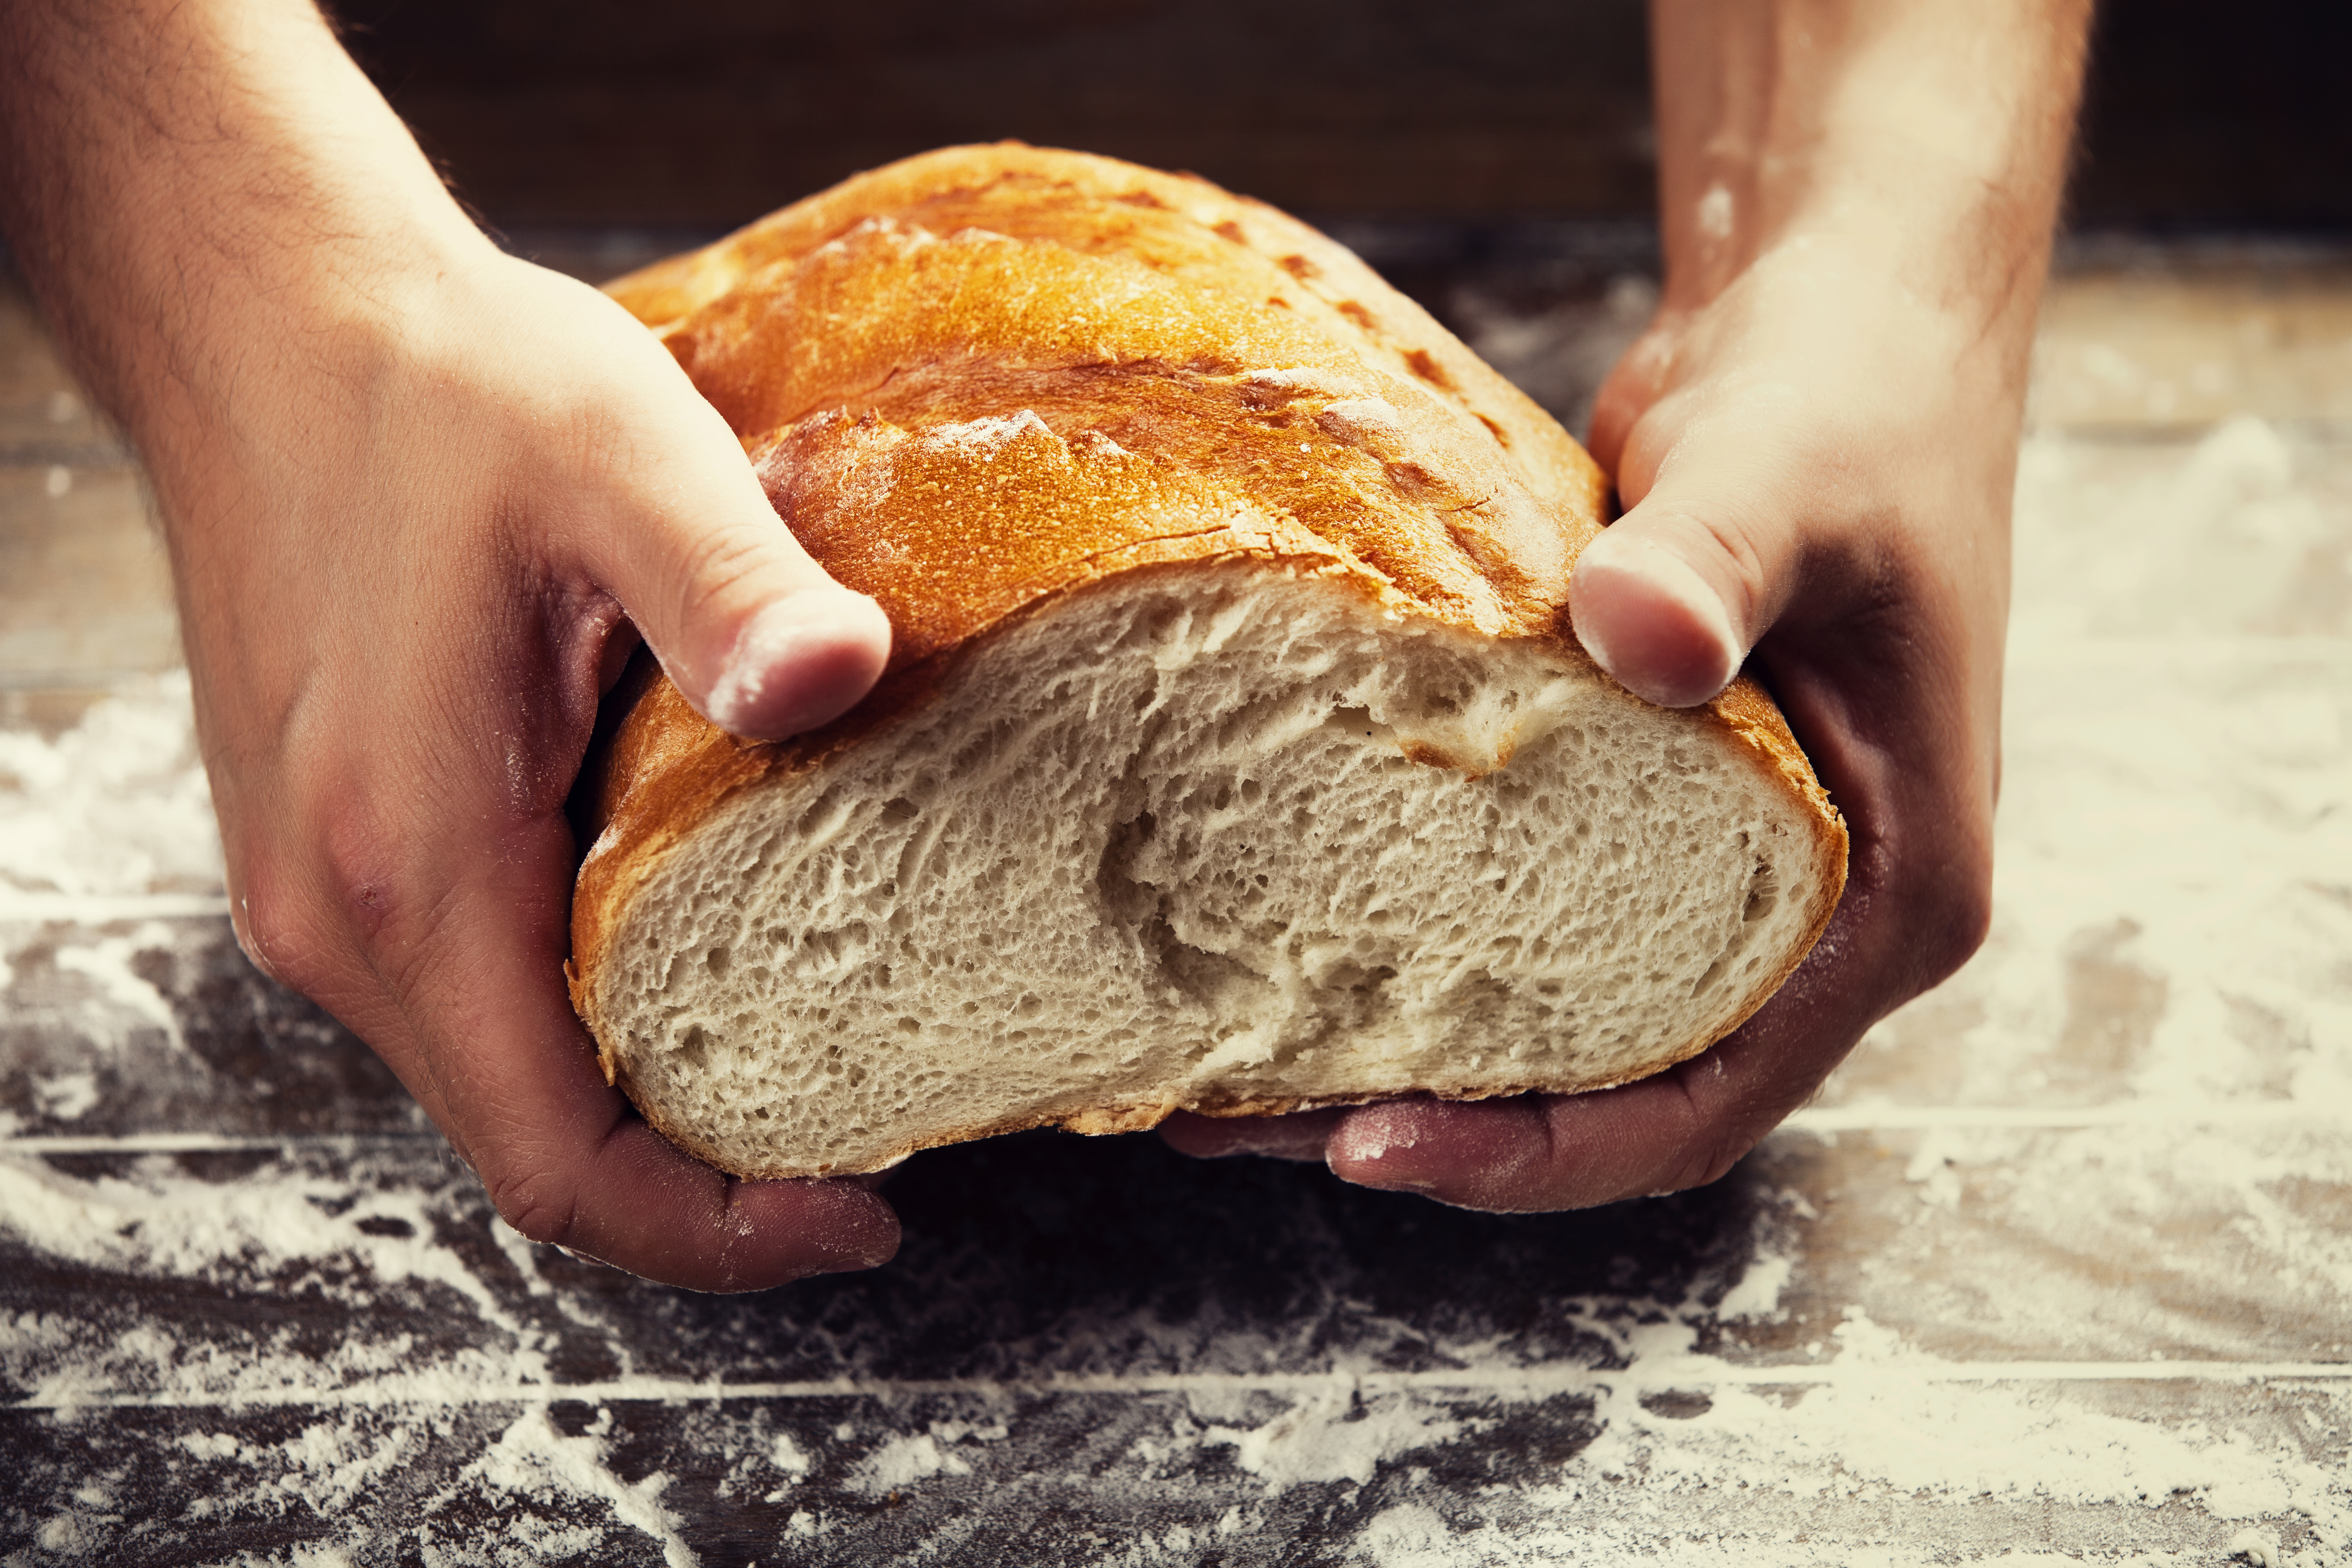 Четверо ножниц мягчайший хлеб поезжай быстрее пить. Хлеб в руках. Булка хлеба в руках. Современный хлеб. Качество хлеба.